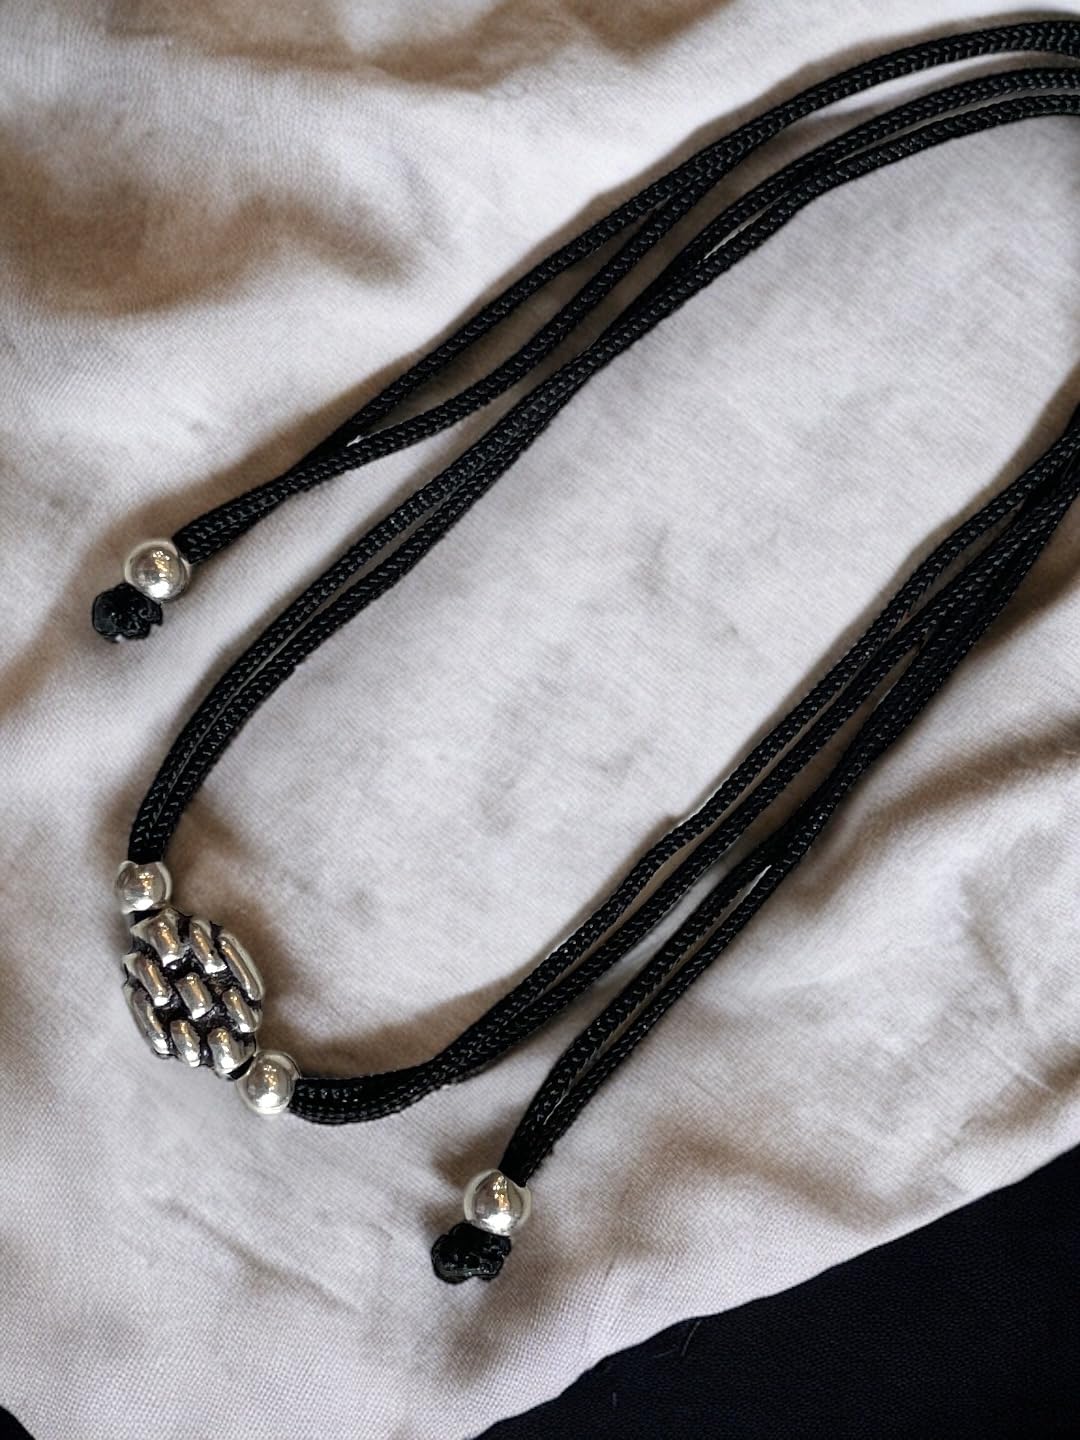 JEWELYAARI â¢ 925 Oxidized Silver Black Cottan Thread Anklet Bracelet with Silver Ball for Girls and Women, Nazarbattu/Nazaiya Anklet Bracelet